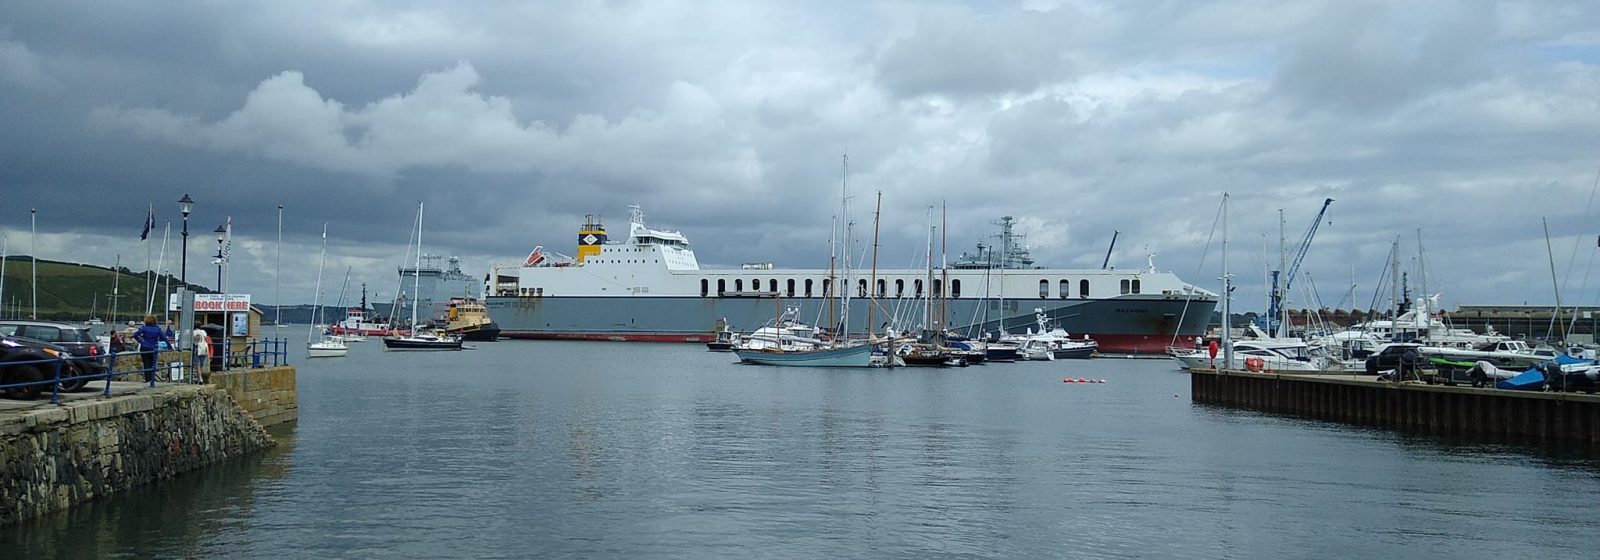 CLdN-roro 'Mazarine' in Falmouth Harbour